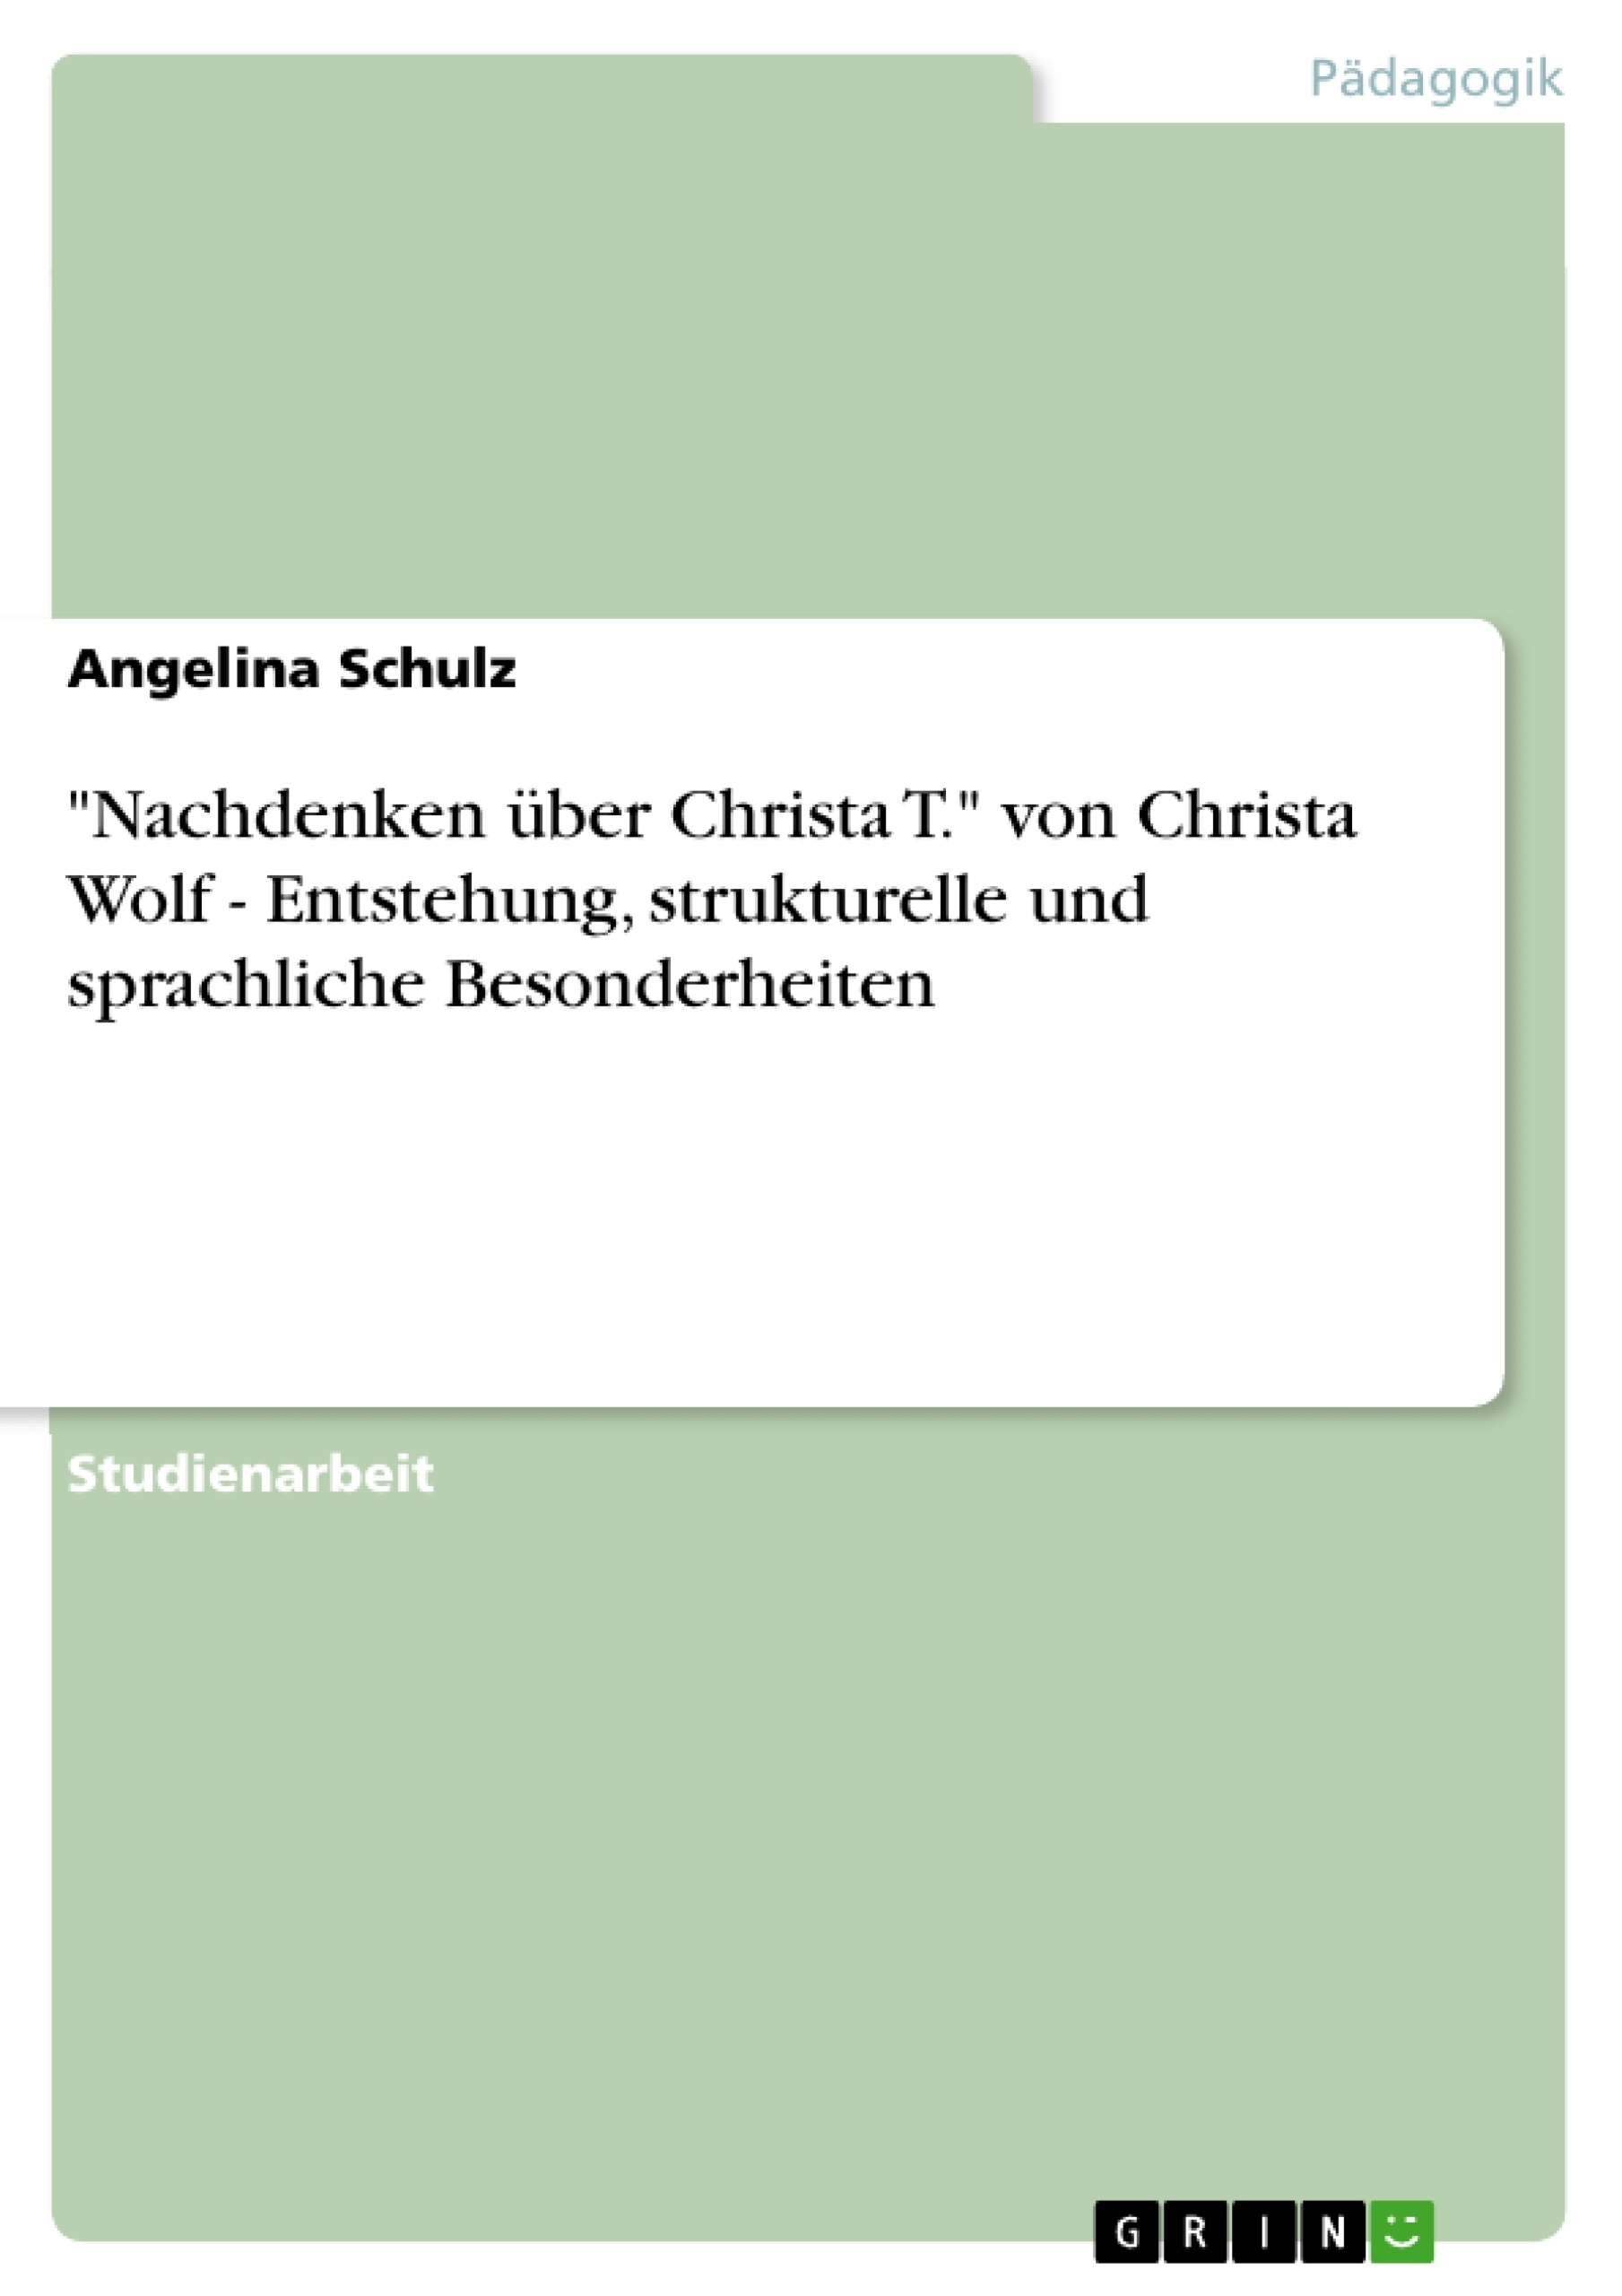 Titre: "Nachdenken über Christa T." von Christa Wolf - Entstehung, strukturelle und sprachliche Besonderheiten